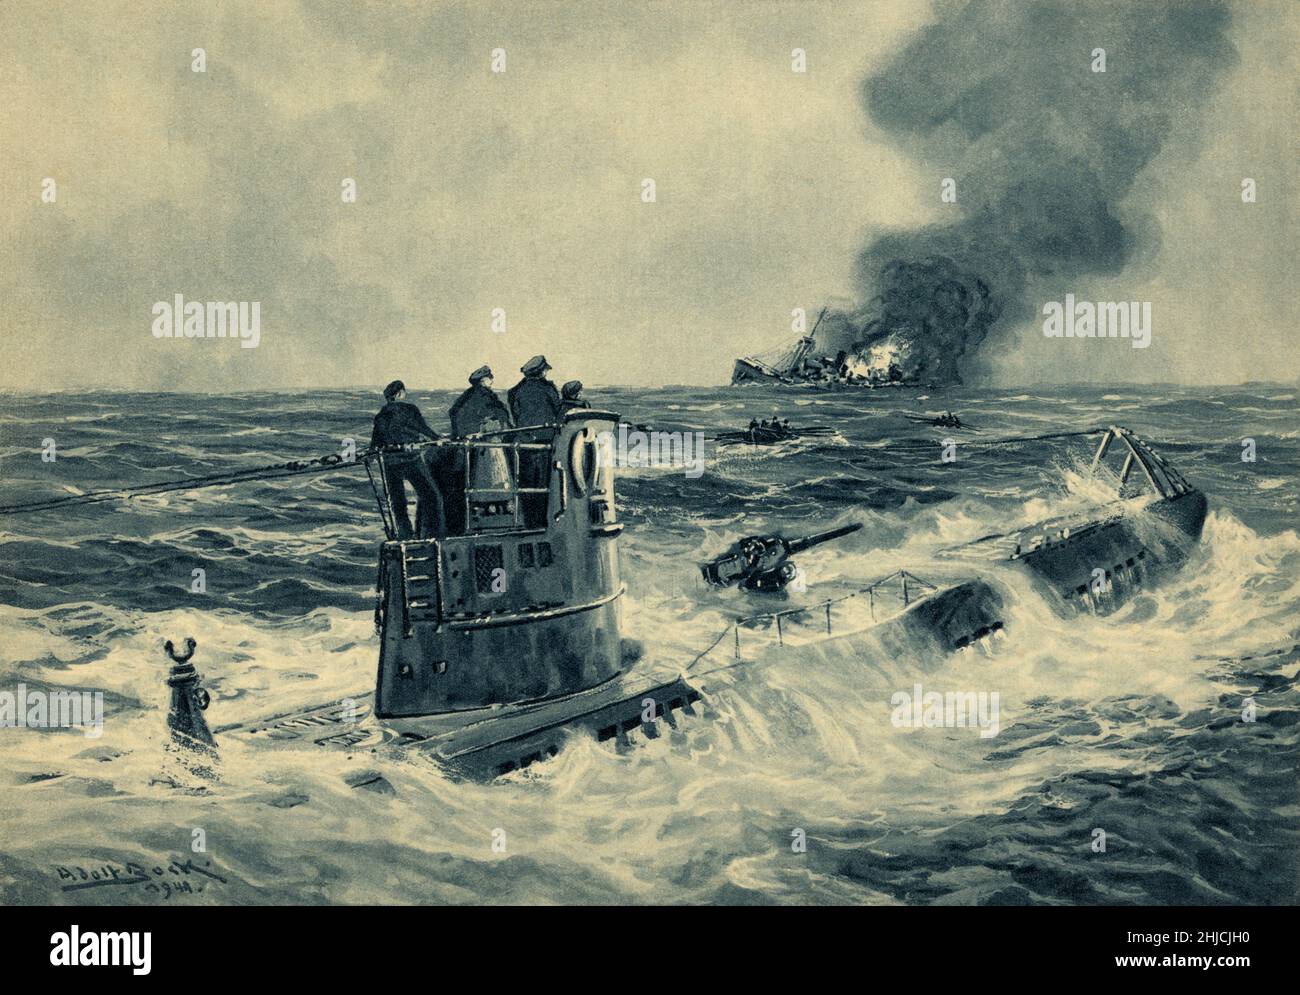 Ataque alemán en U-boat, Segunda Guerra Mundial Pintura del artista alemán Adolf Bock (1890-1968) de marineros alemanes en la torre de enlatado de un U-boat (submarino) que ha emergido después de hundir un barco de carga británico durante la Segunda Guerra Mundial (1939-1945). Botes salvavidas de sobrevivientes en el fondo. Foto de stock